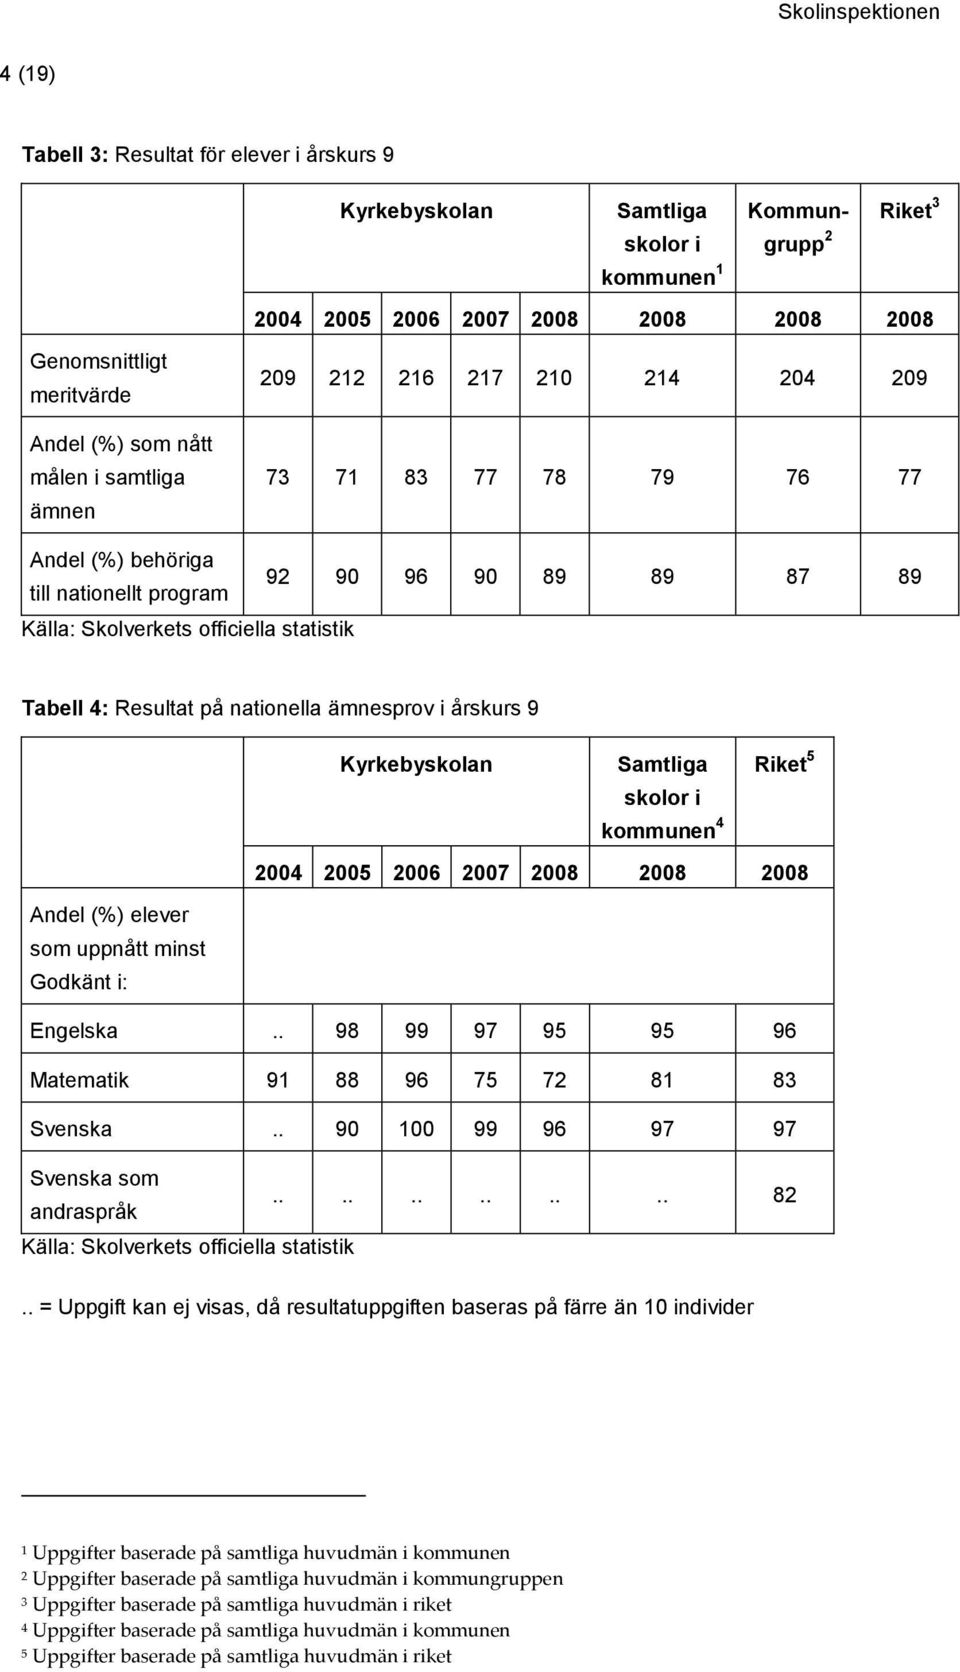 Resultat på nationella ämnesprov i årskurs 9 Kyrkebyskolan Samtliga skolor i kommunen 4 Riket 5 2004 2005 2006 2007 2008 2008 2008 Andel (%) elever som uppnått minst Godkänt i: Engelska.